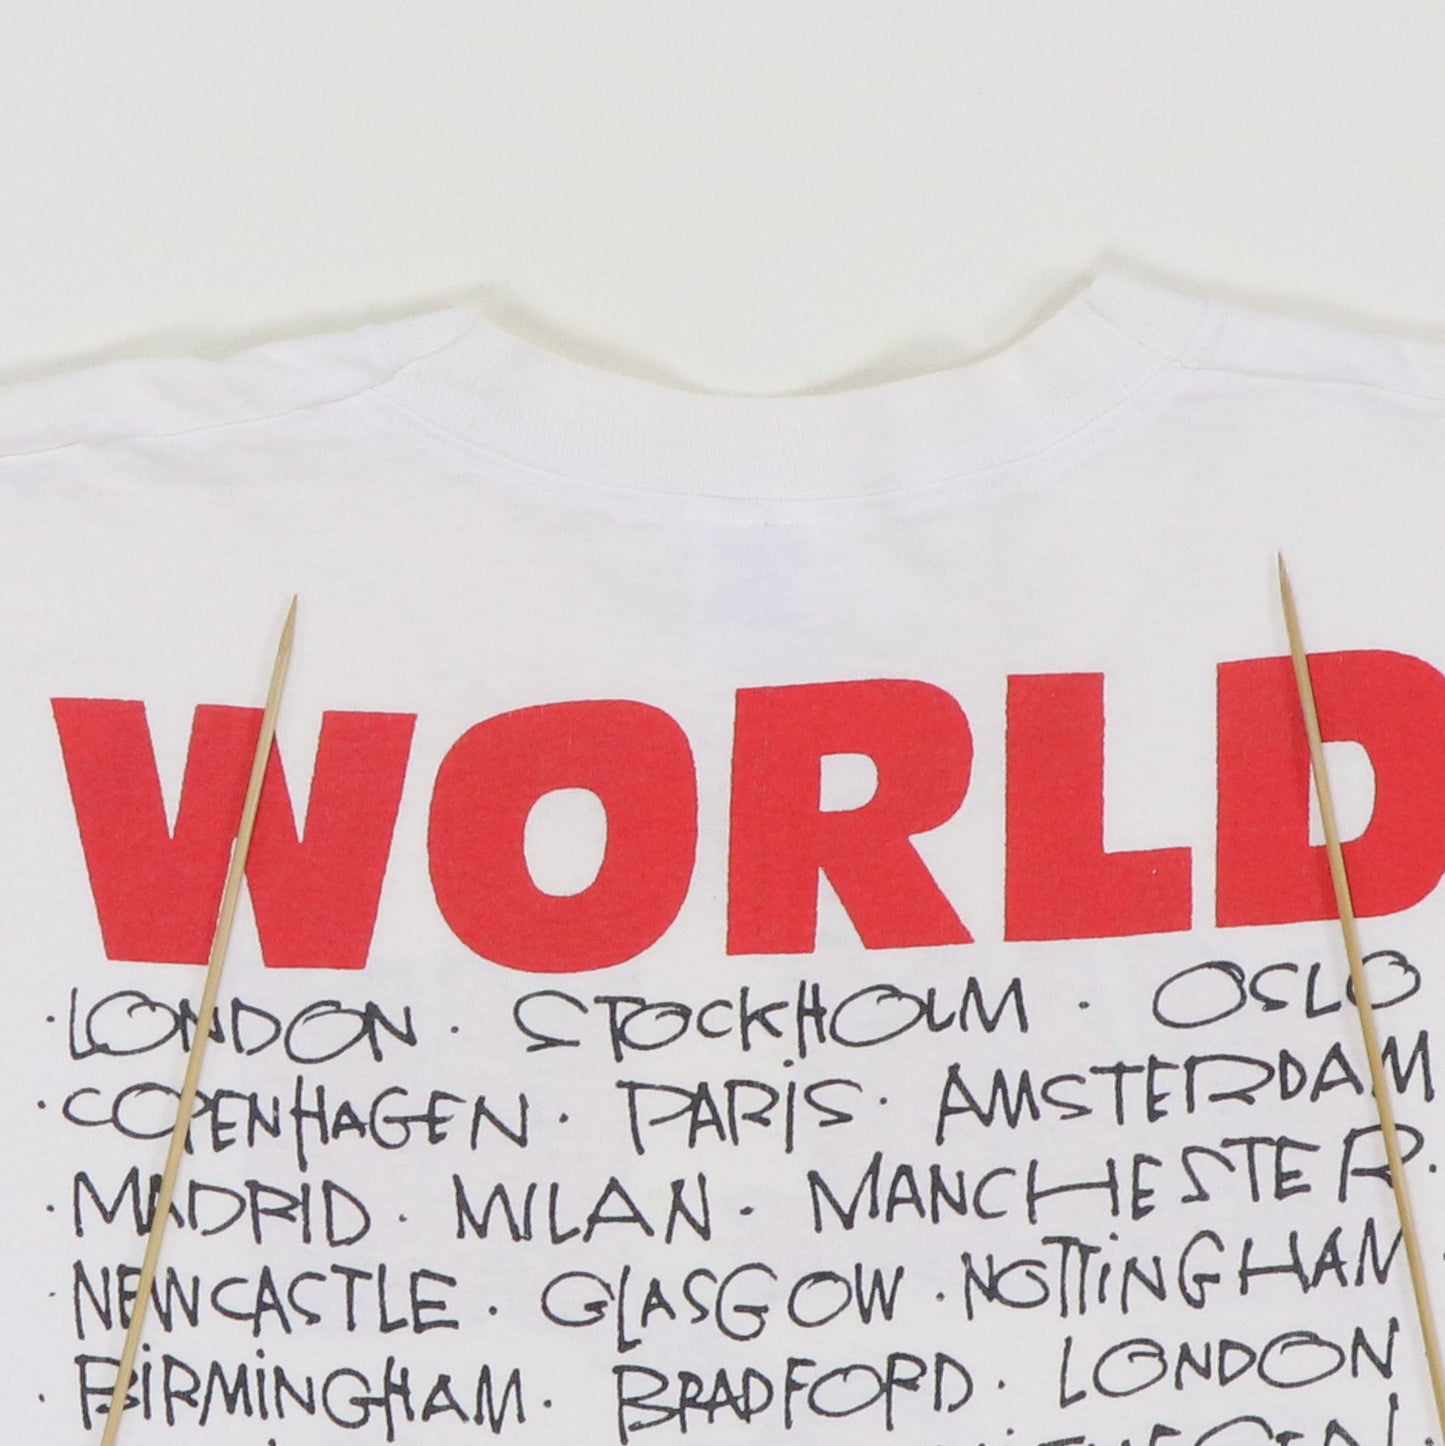 1992 Pearl Jam European Tour Shirt